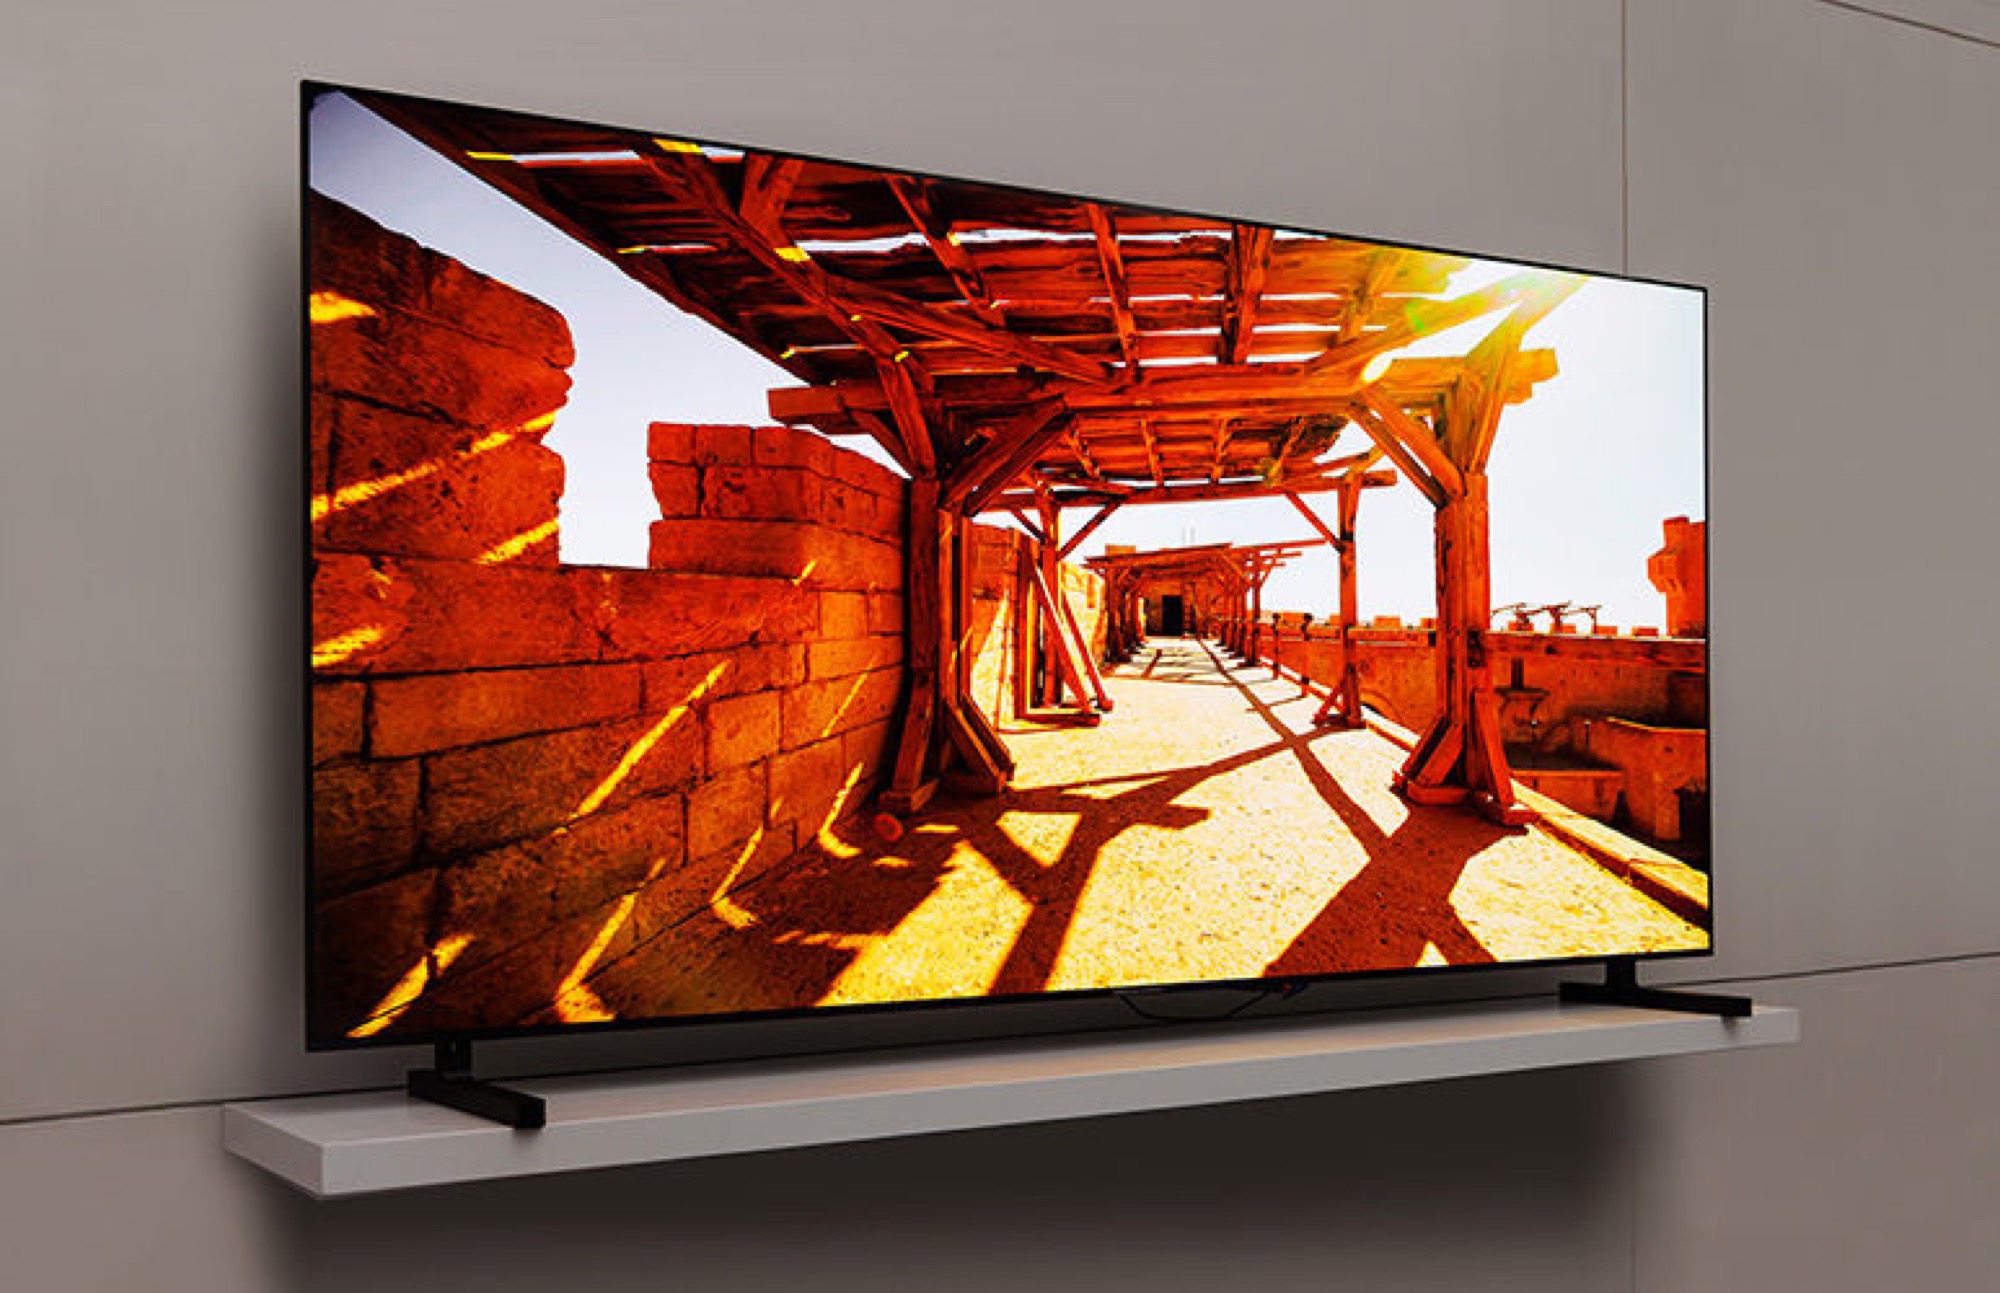 Samsung QDOLED Smart TVs werden 2023 größer und über 2.000 Nits hell News